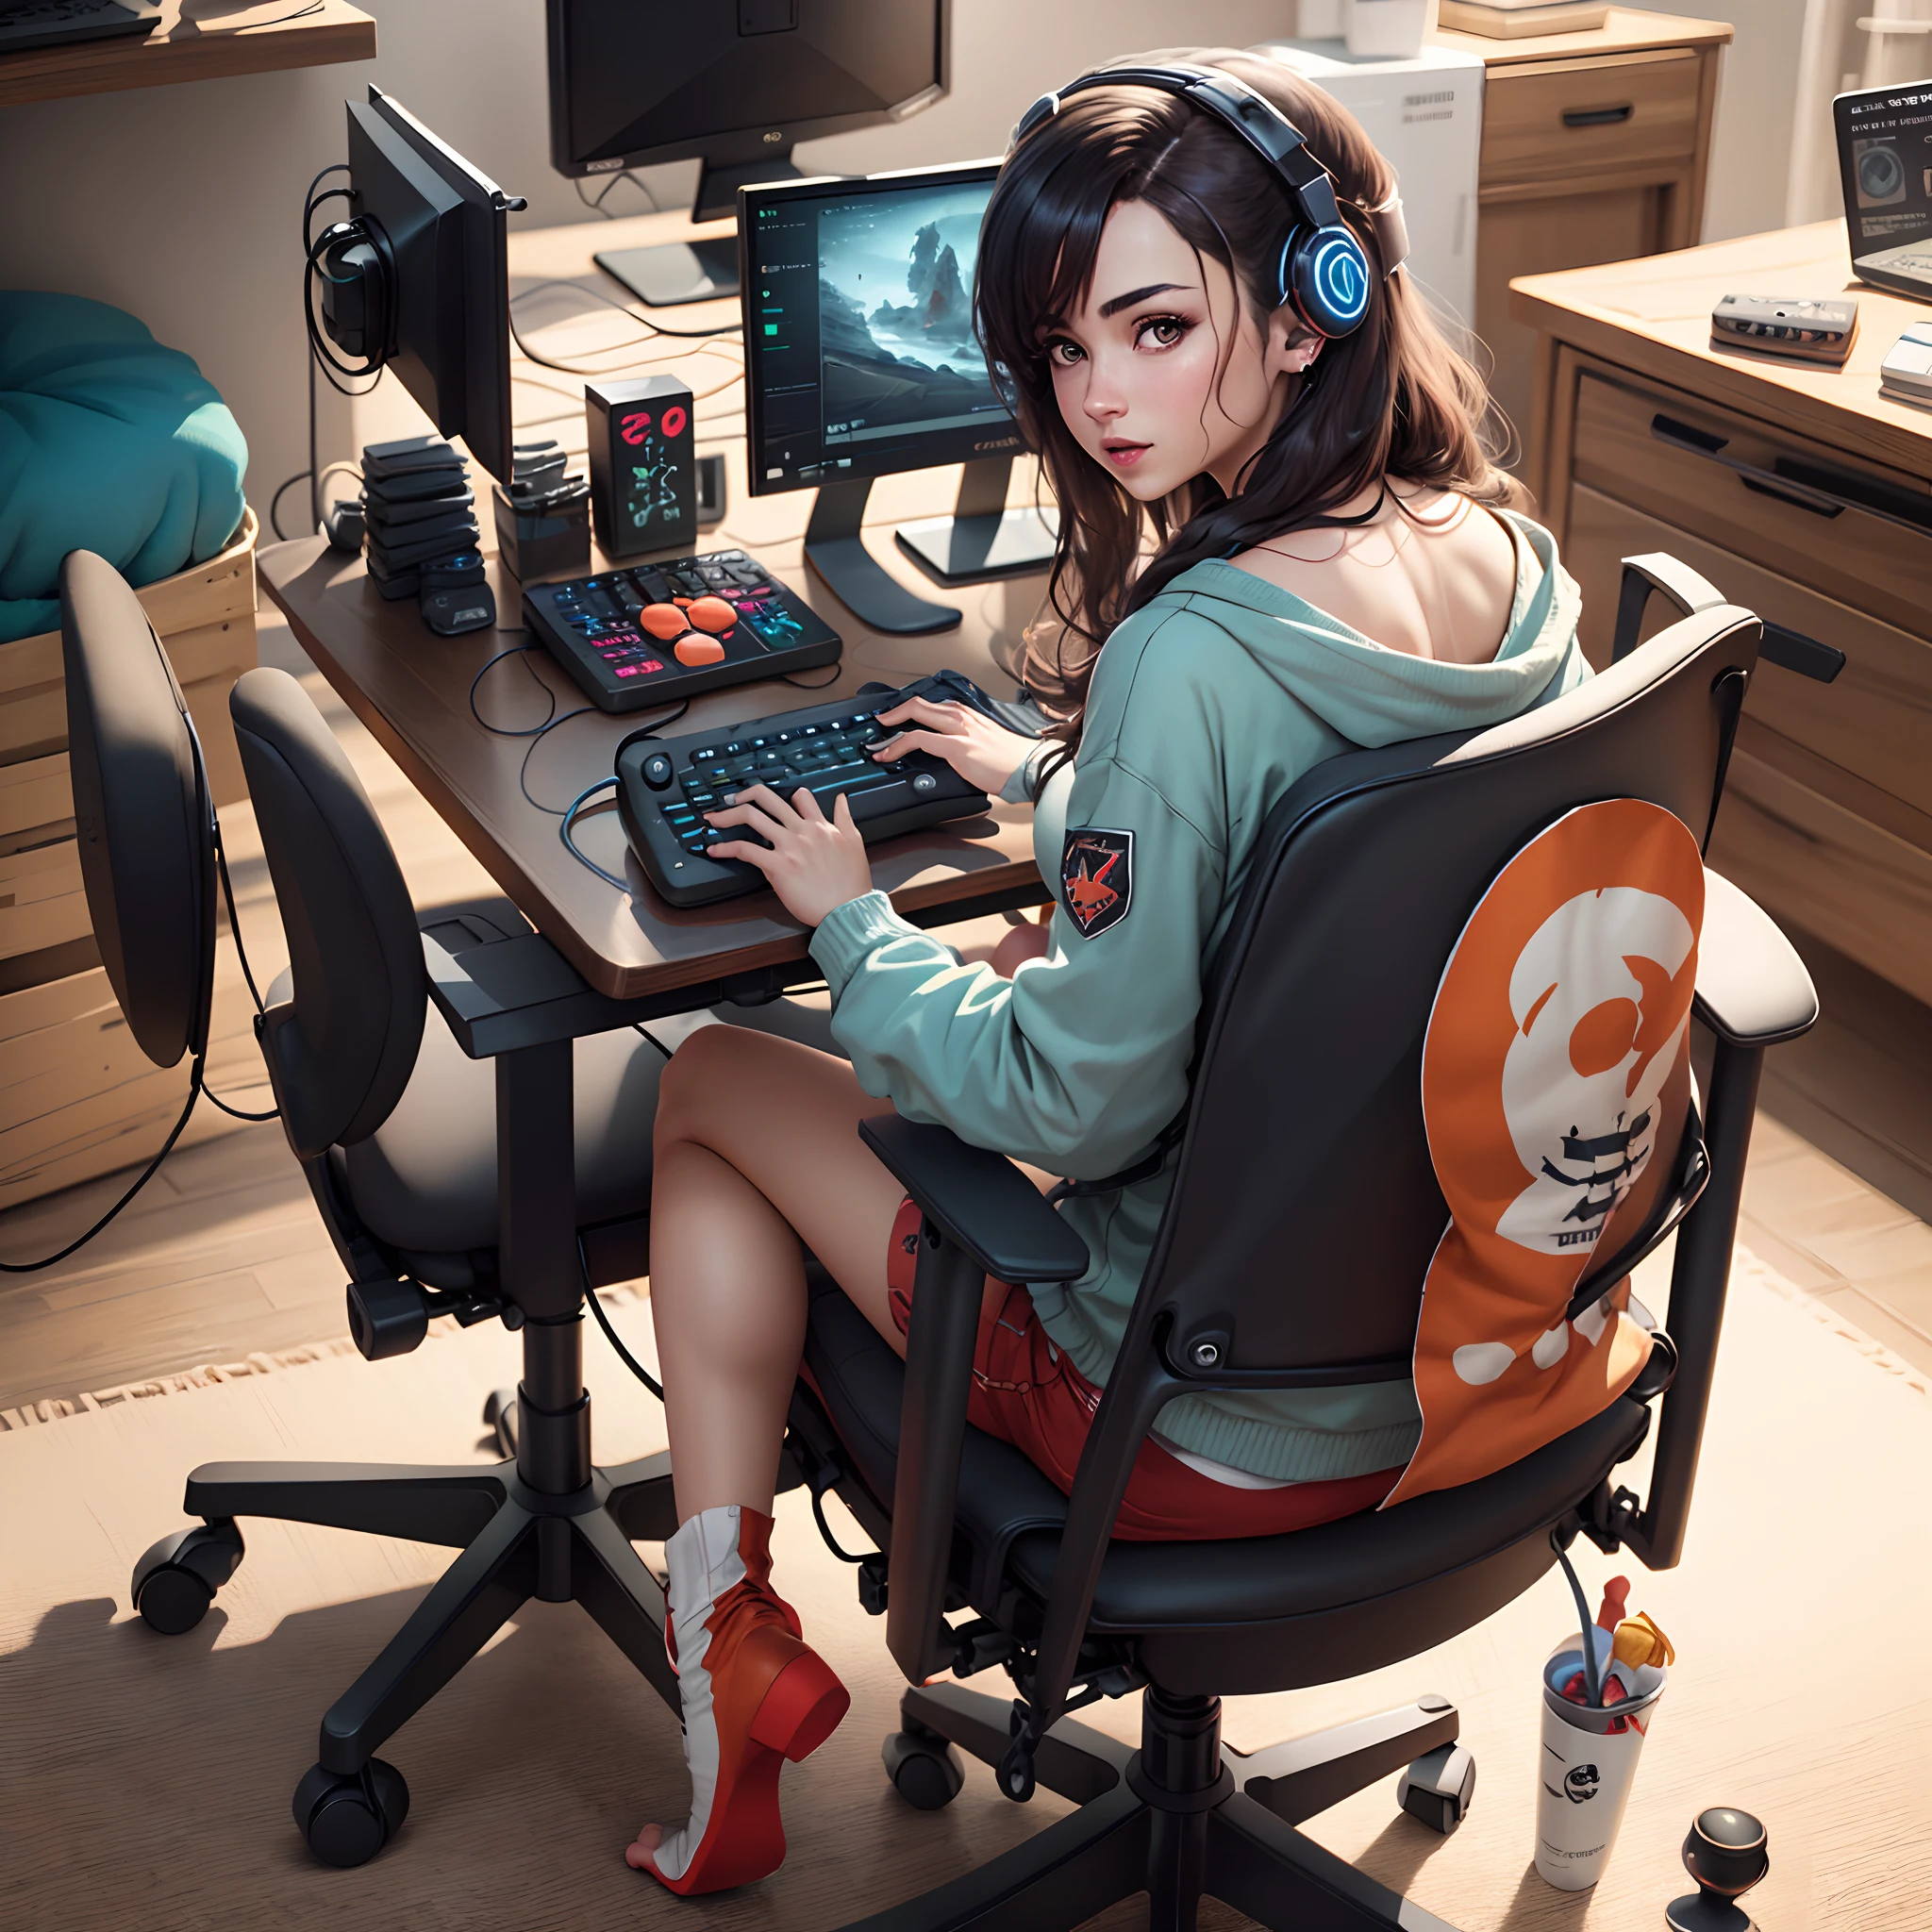 Erstellen Sie ein Foto von Aris Gameplay, wie sie in ihrem nackten Gamer-Stuhl sitzt, in einem realistischen Stil